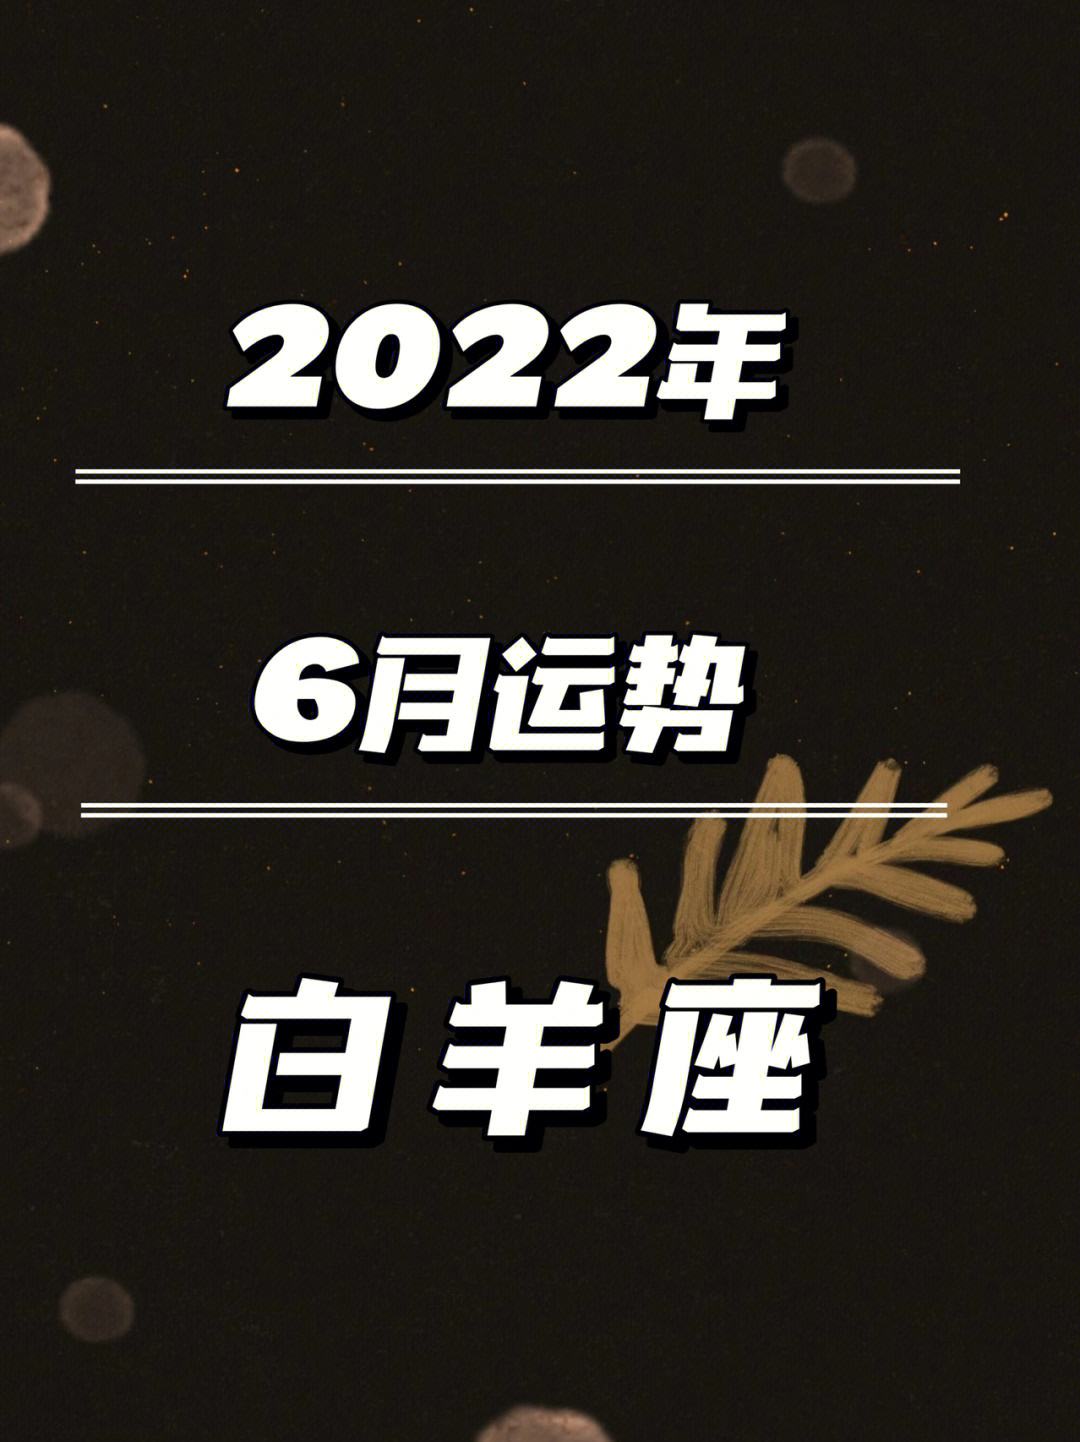 2022白羊克星星座,2023年白羊座太惨了